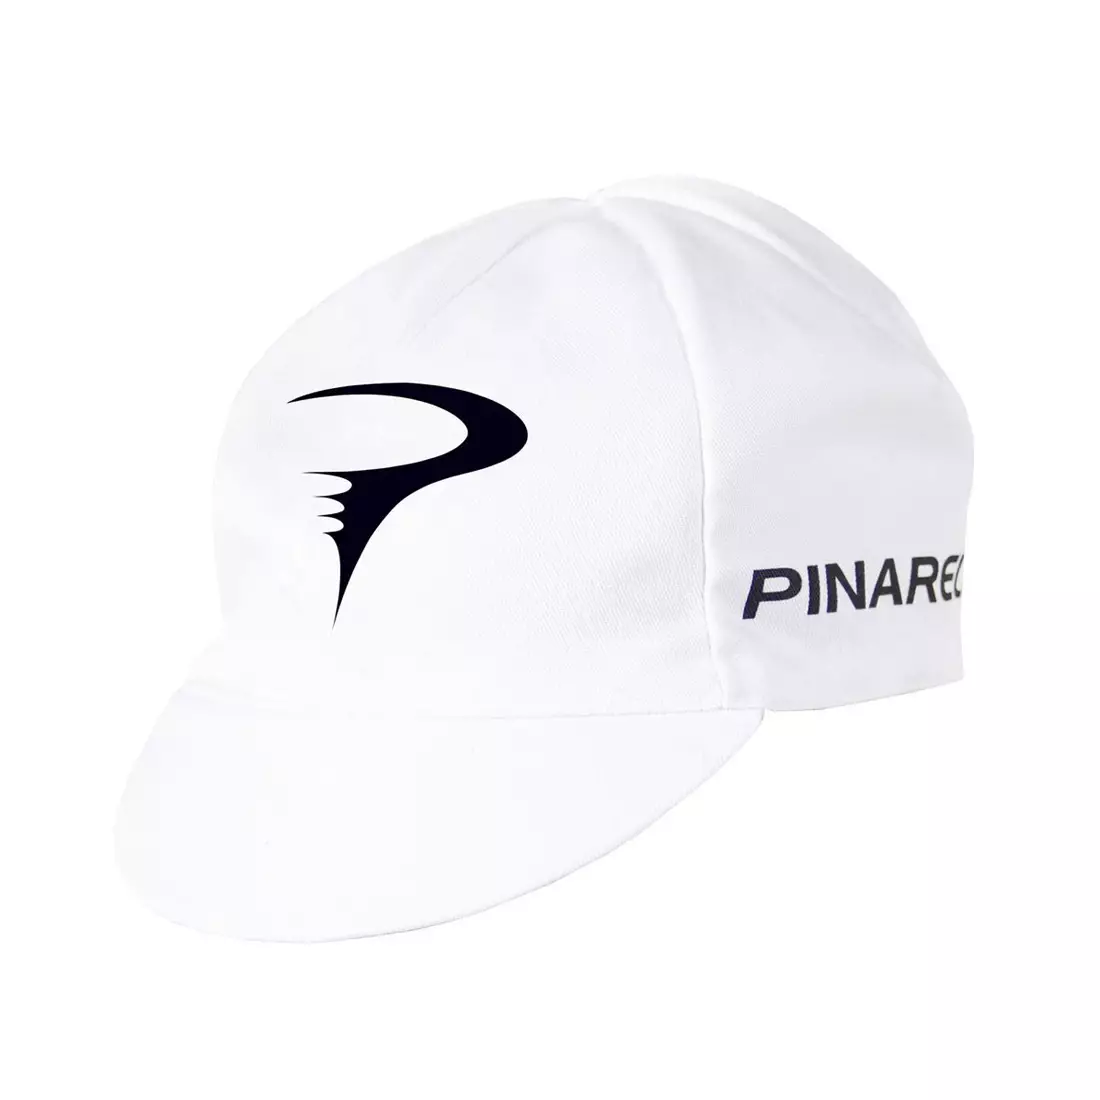 PINARELLO cycling cap white/black logo